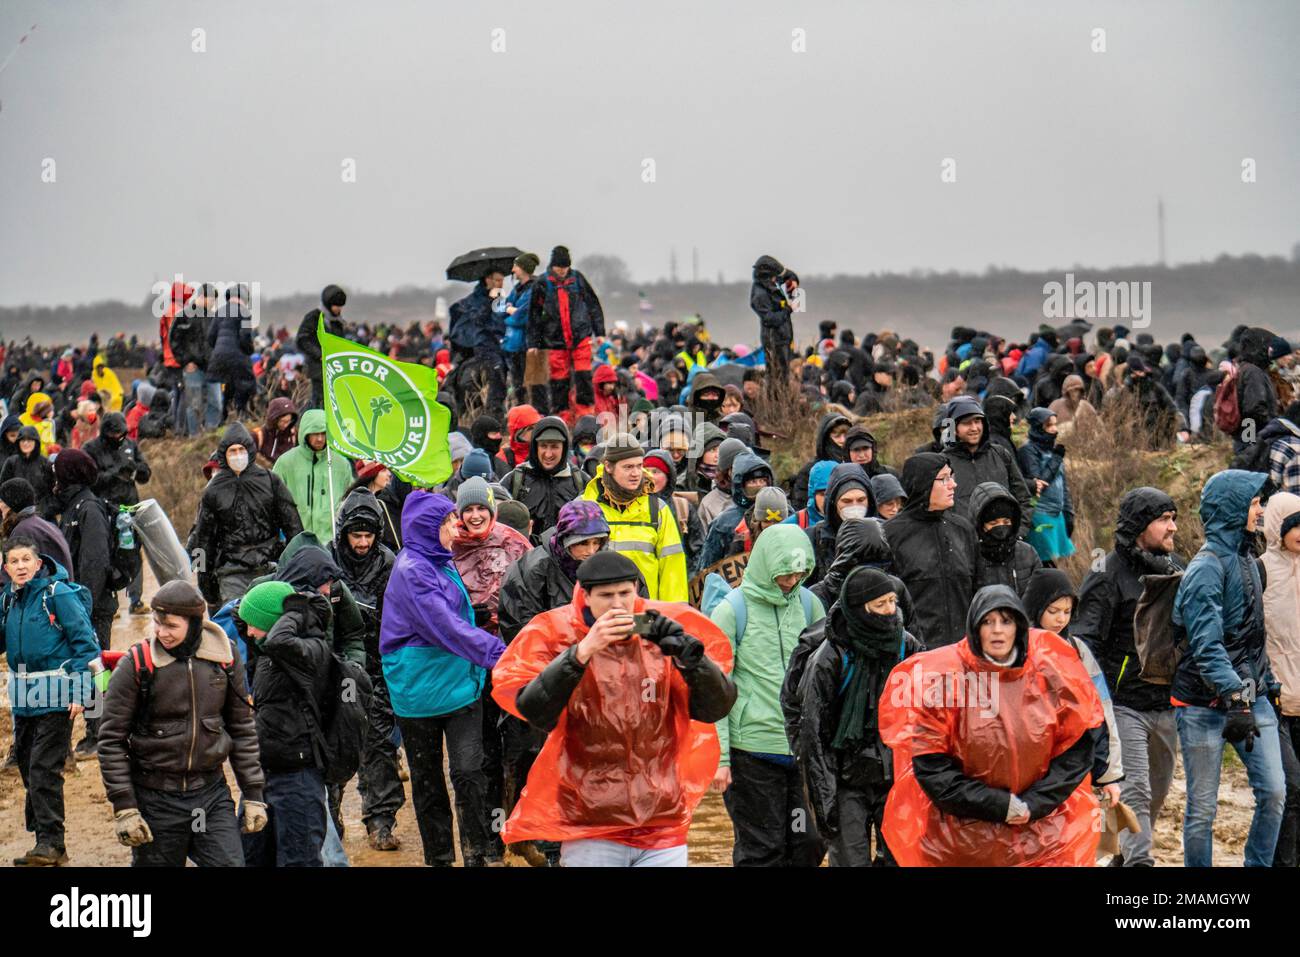 Molte migliaia di dimostranti marciano ai margini della miniera a cielo aperto di Garzweiler dopo una protesta contro la demolizione del villaggio lignita di Lüt Foto Stock